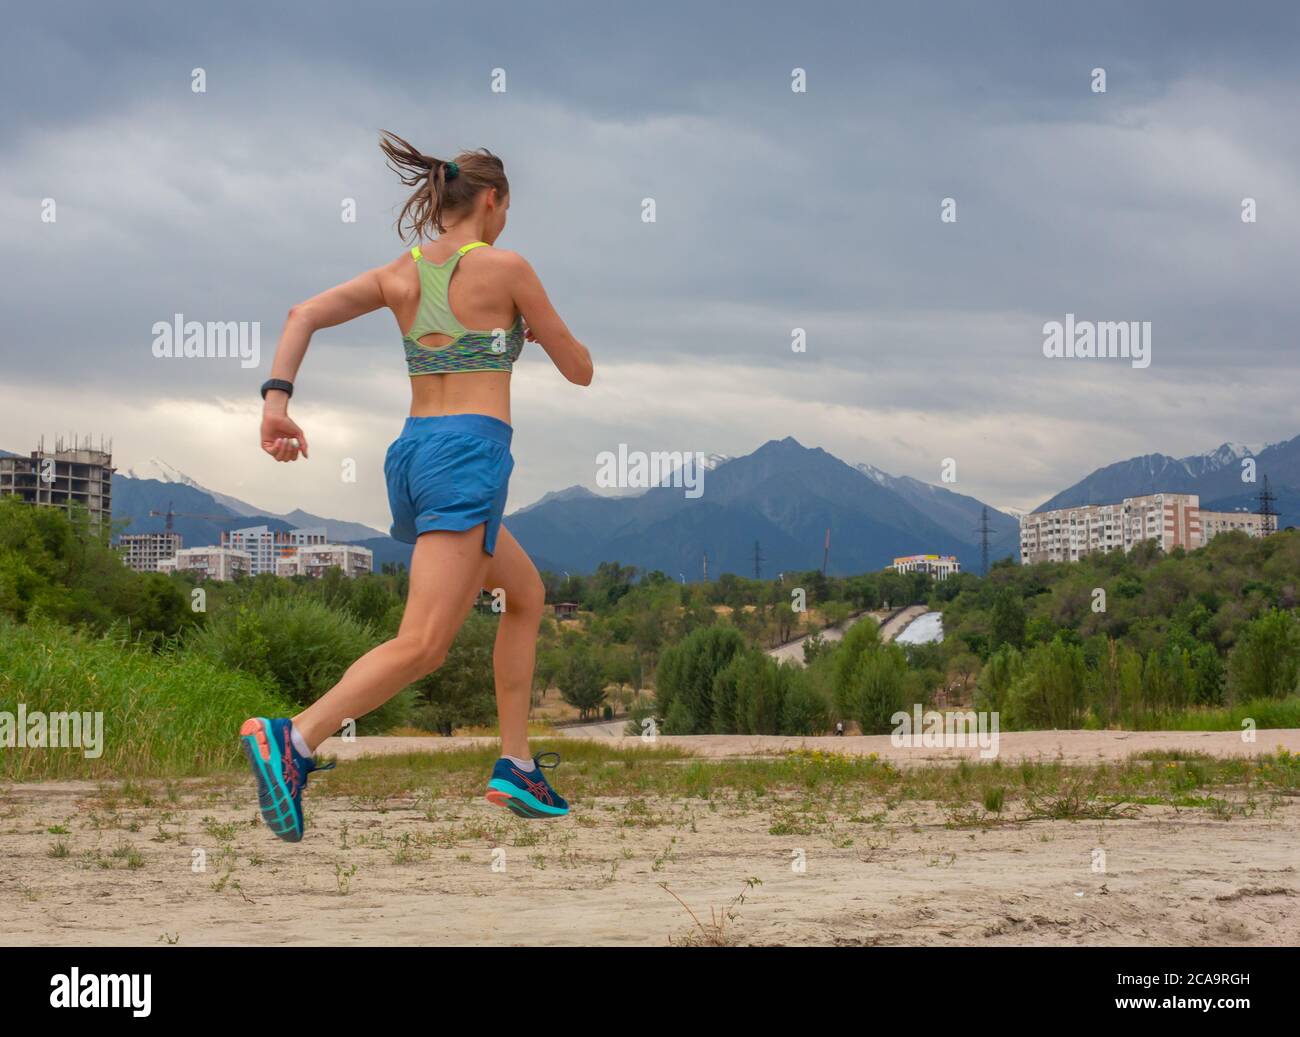 Laufen im Stadtpark. Frau Läuferin draußen beim Joggen, Blick auf die Berge im Hintergrund. Stockfoto